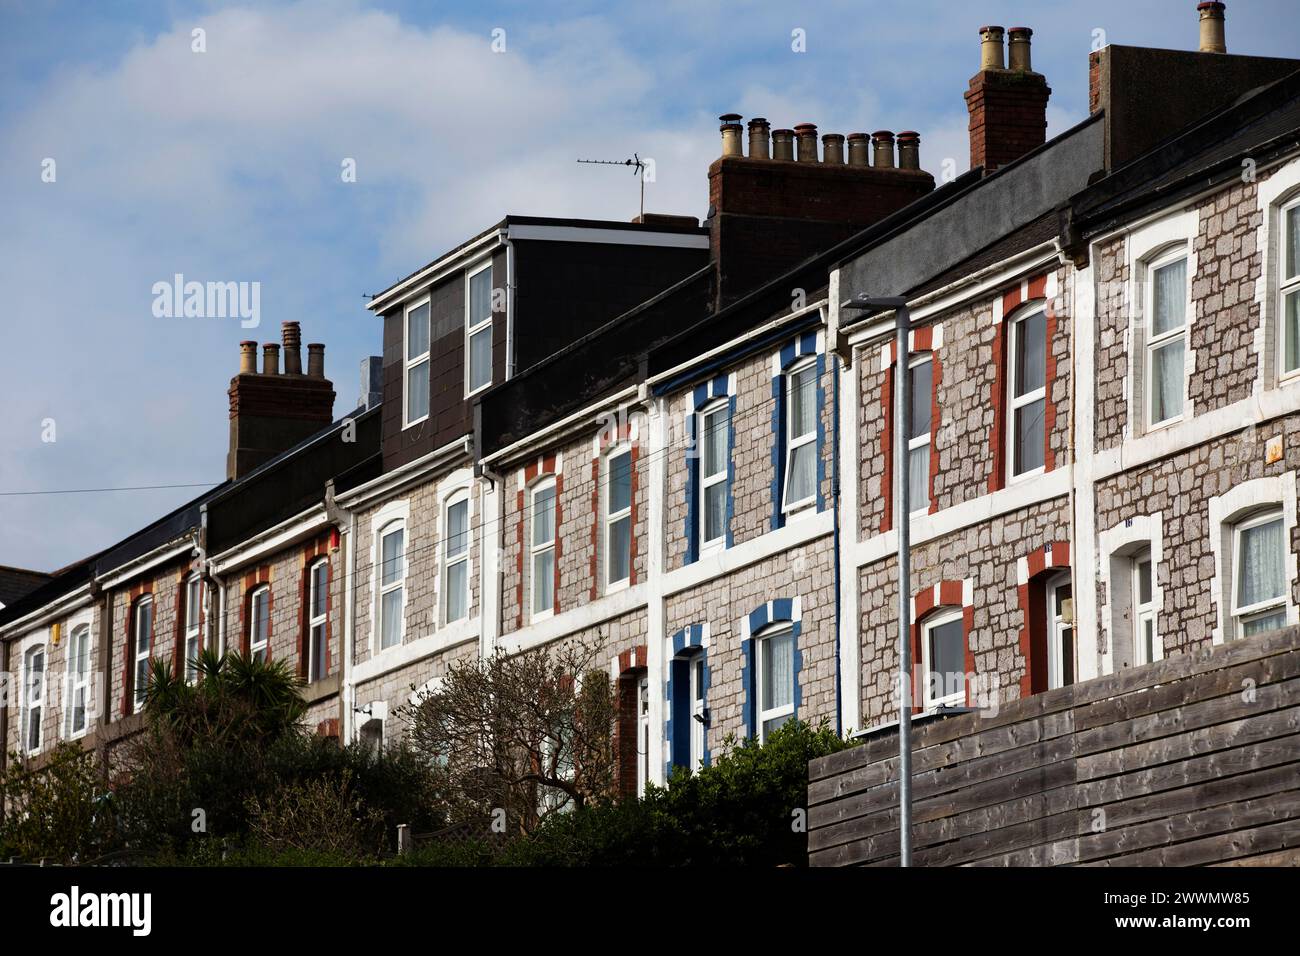 Allgemeiner Querschnitt von Reihenhäusern in einem Arbeiterviertel in England Stockfoto